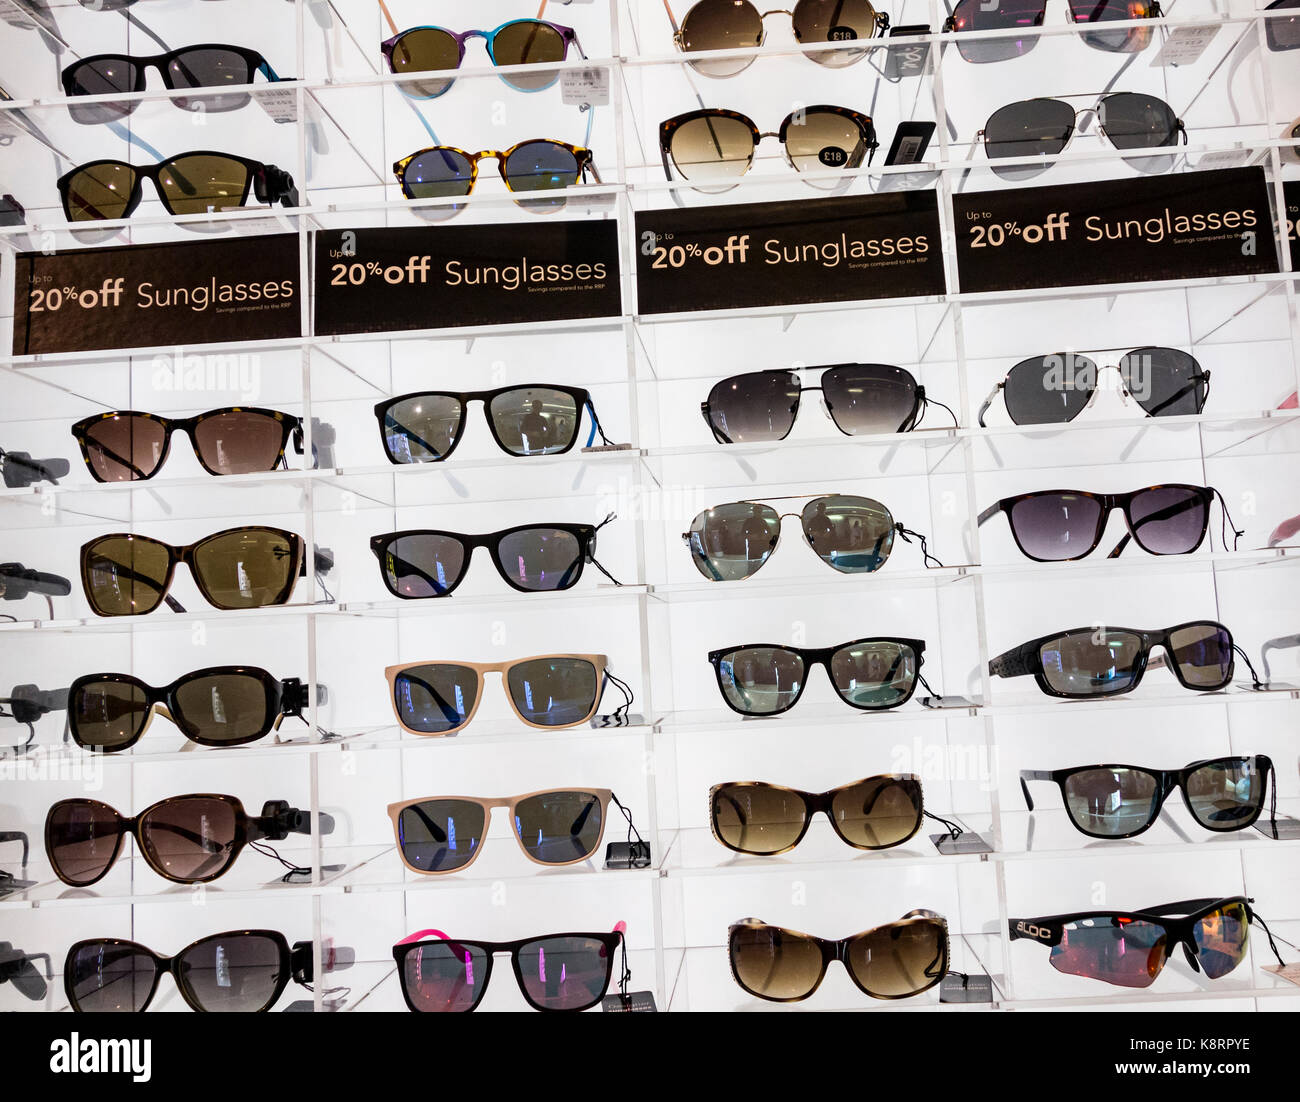 cartier sunglasses dubai airport